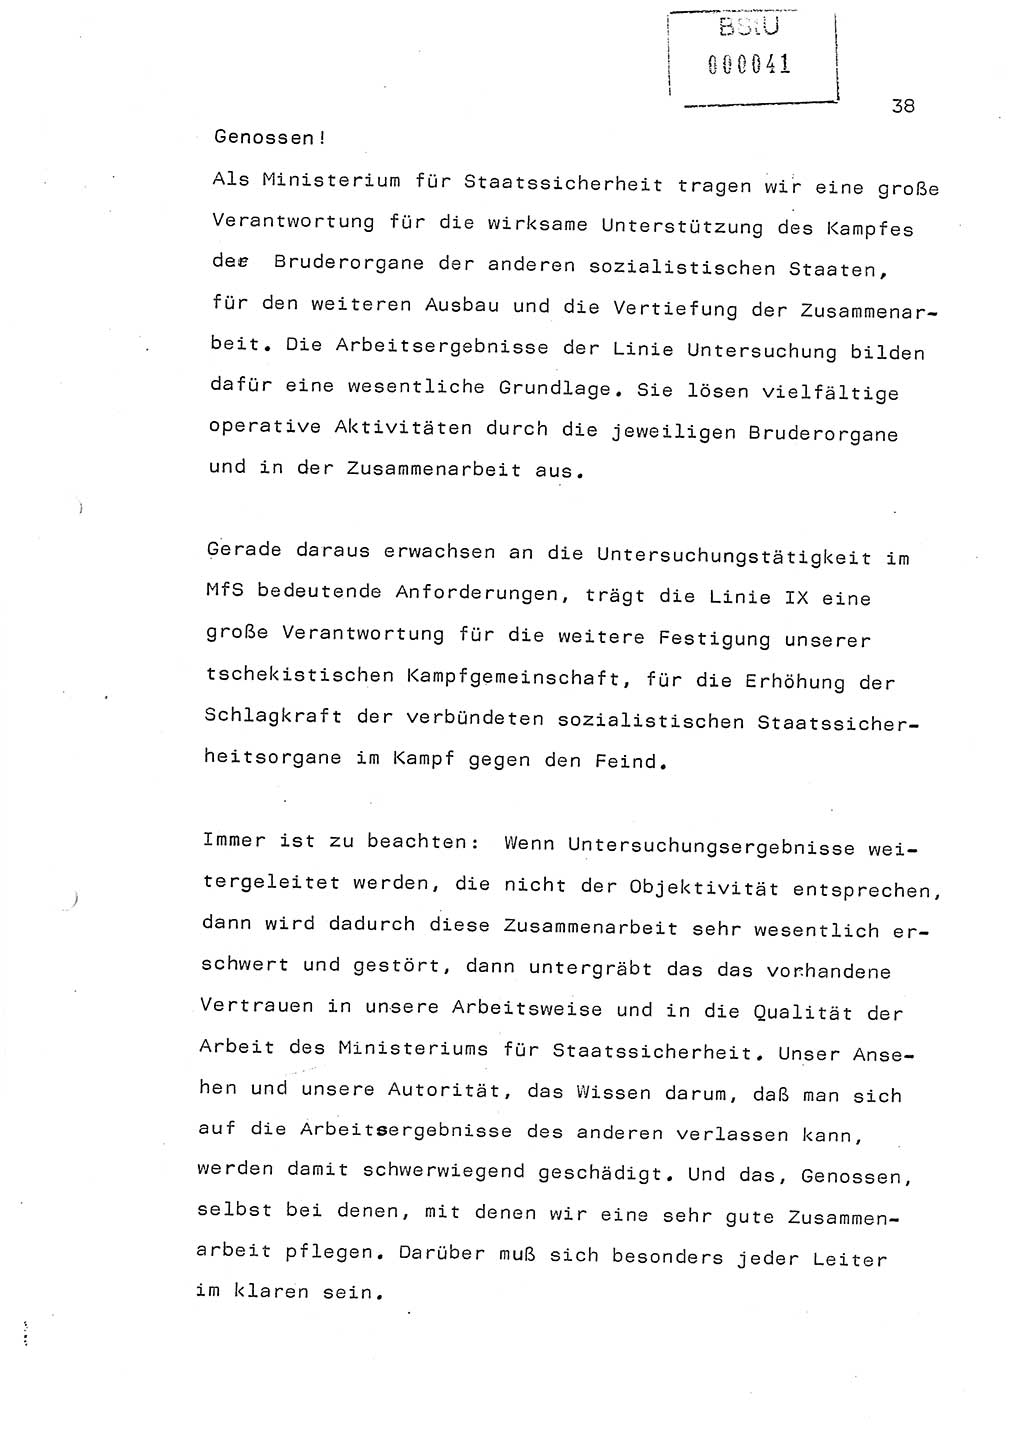 Referat (Generaloberst Erich Mielke) auf der Zentralen Dienstkonferenz am 24.5.1979 [Ministerium für Staatssicherheit (MfS), Deutsche Demokratische Republik (DDR), Der Minister], Berlin 1979, Seite 38 (Ref. DK DDR MfS Min. /79 1979, S. 38)